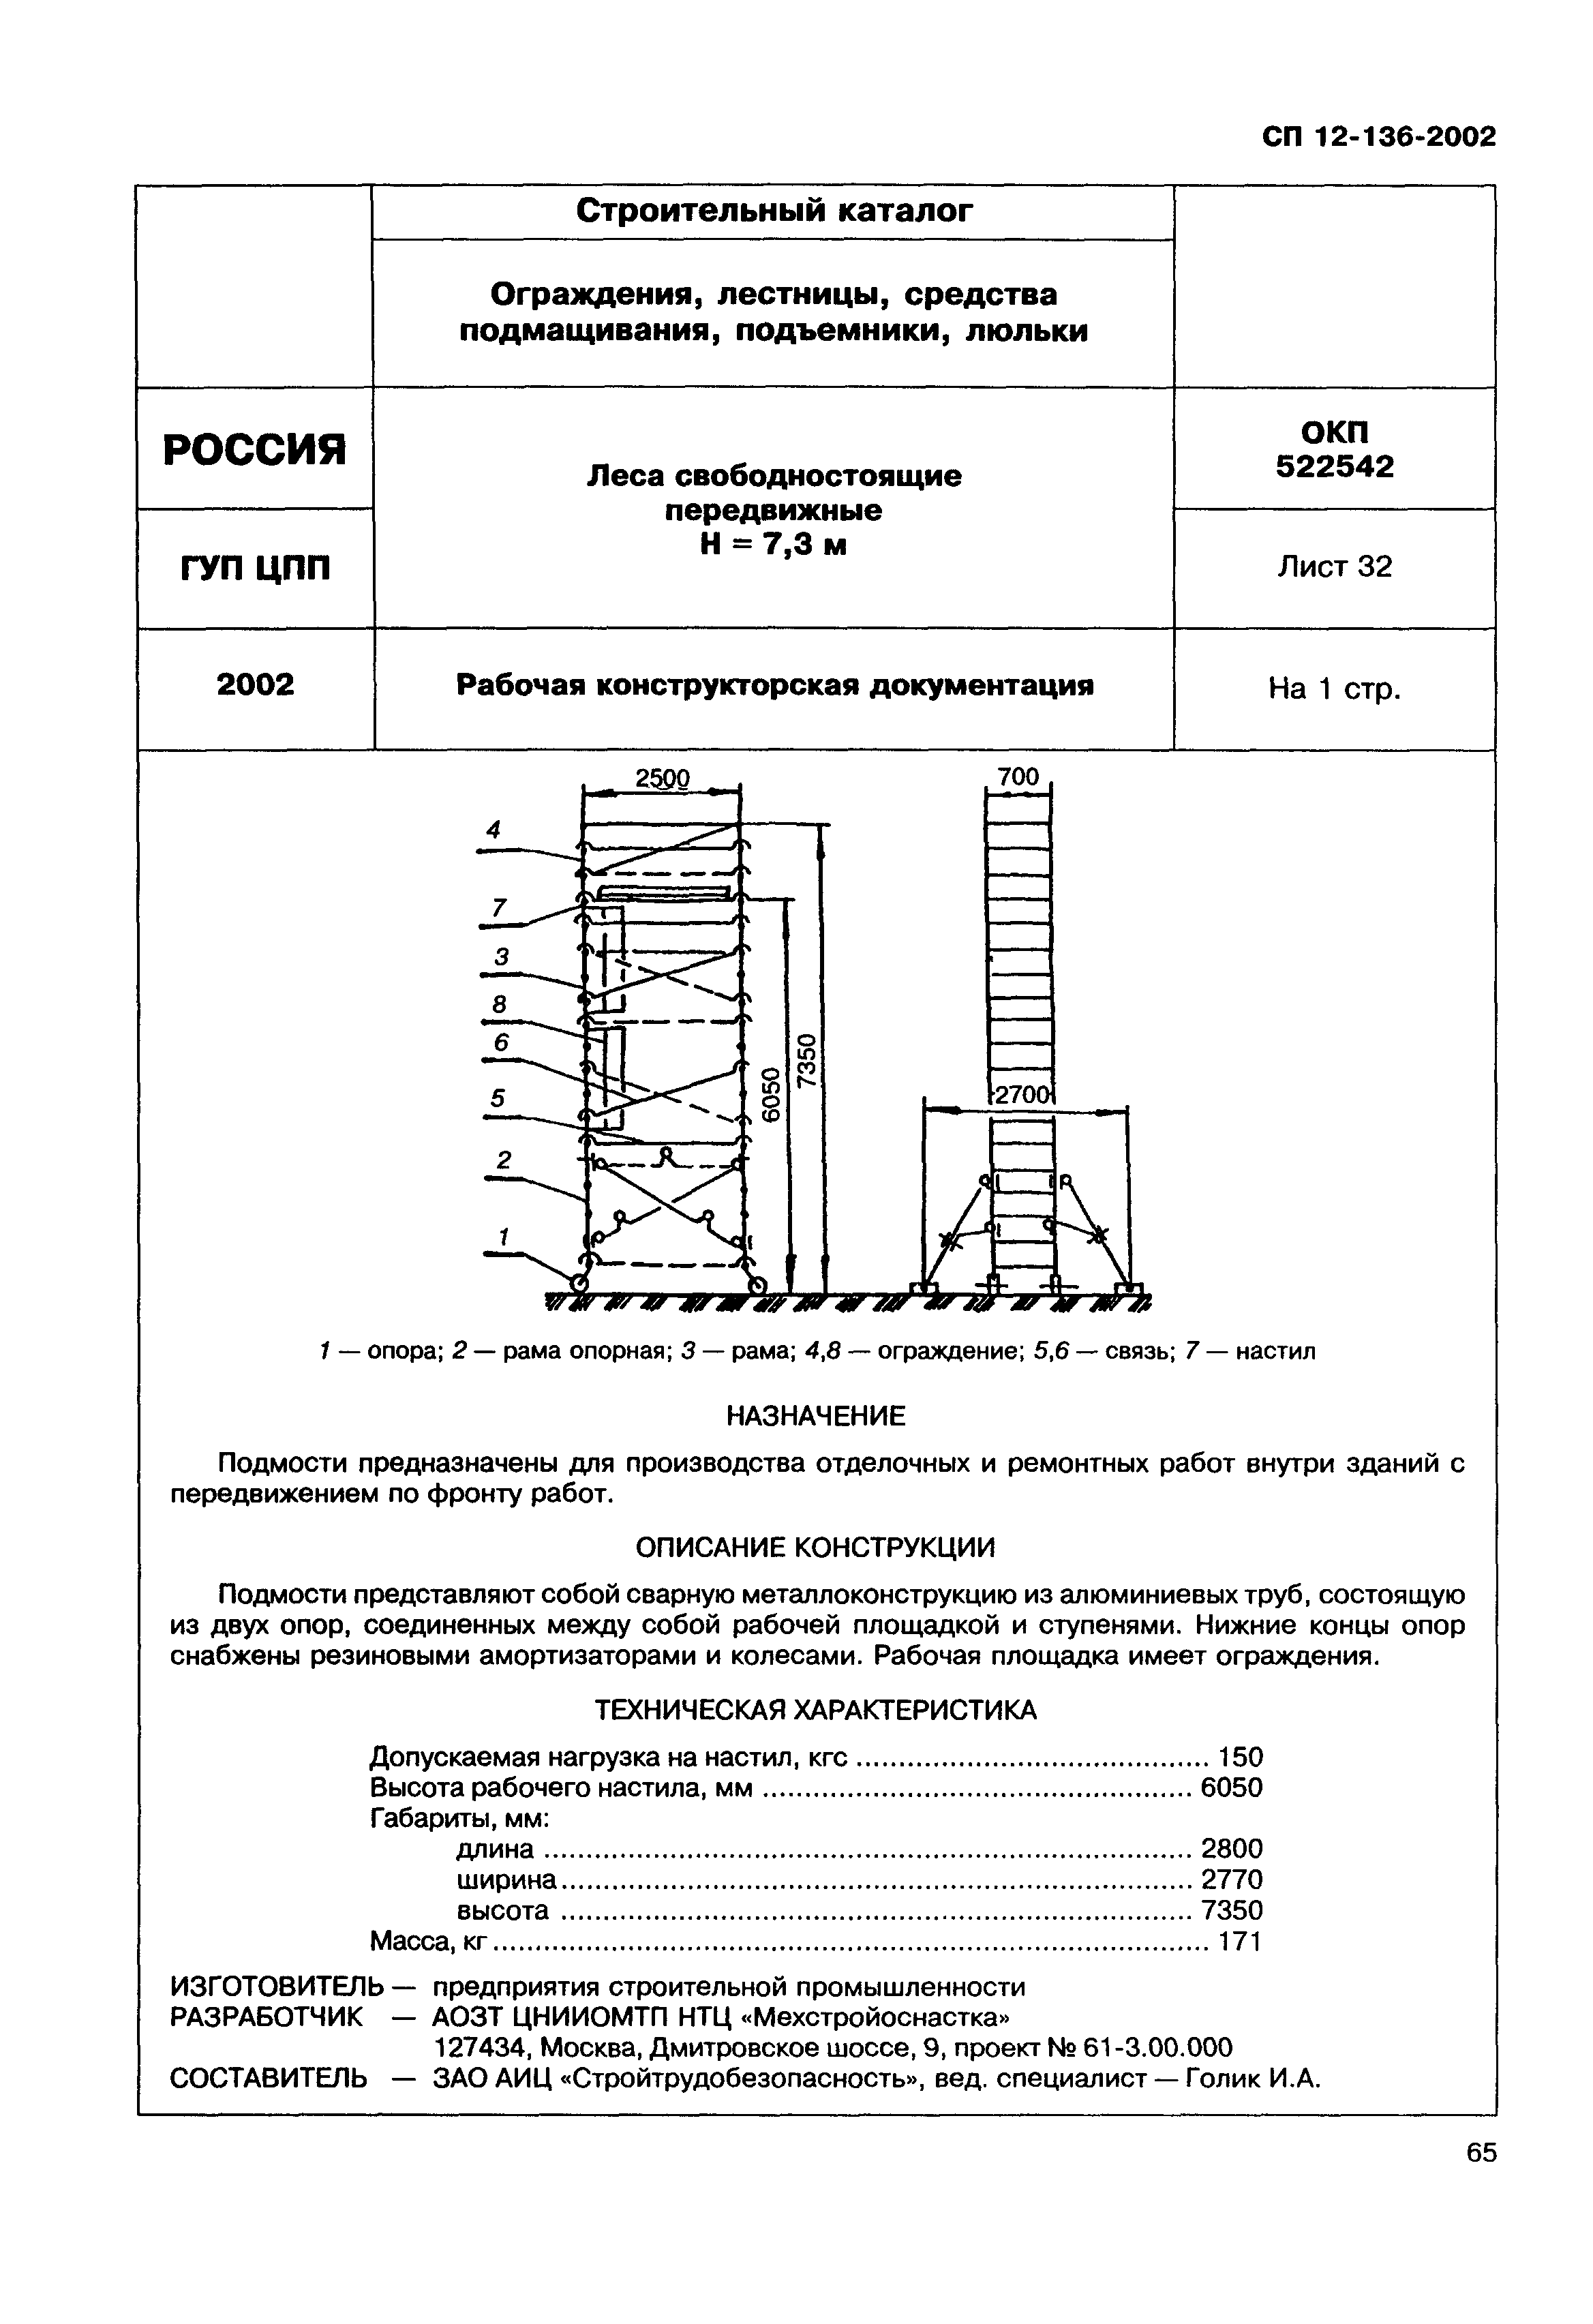 Справочное пособие к СП 12-136-2002